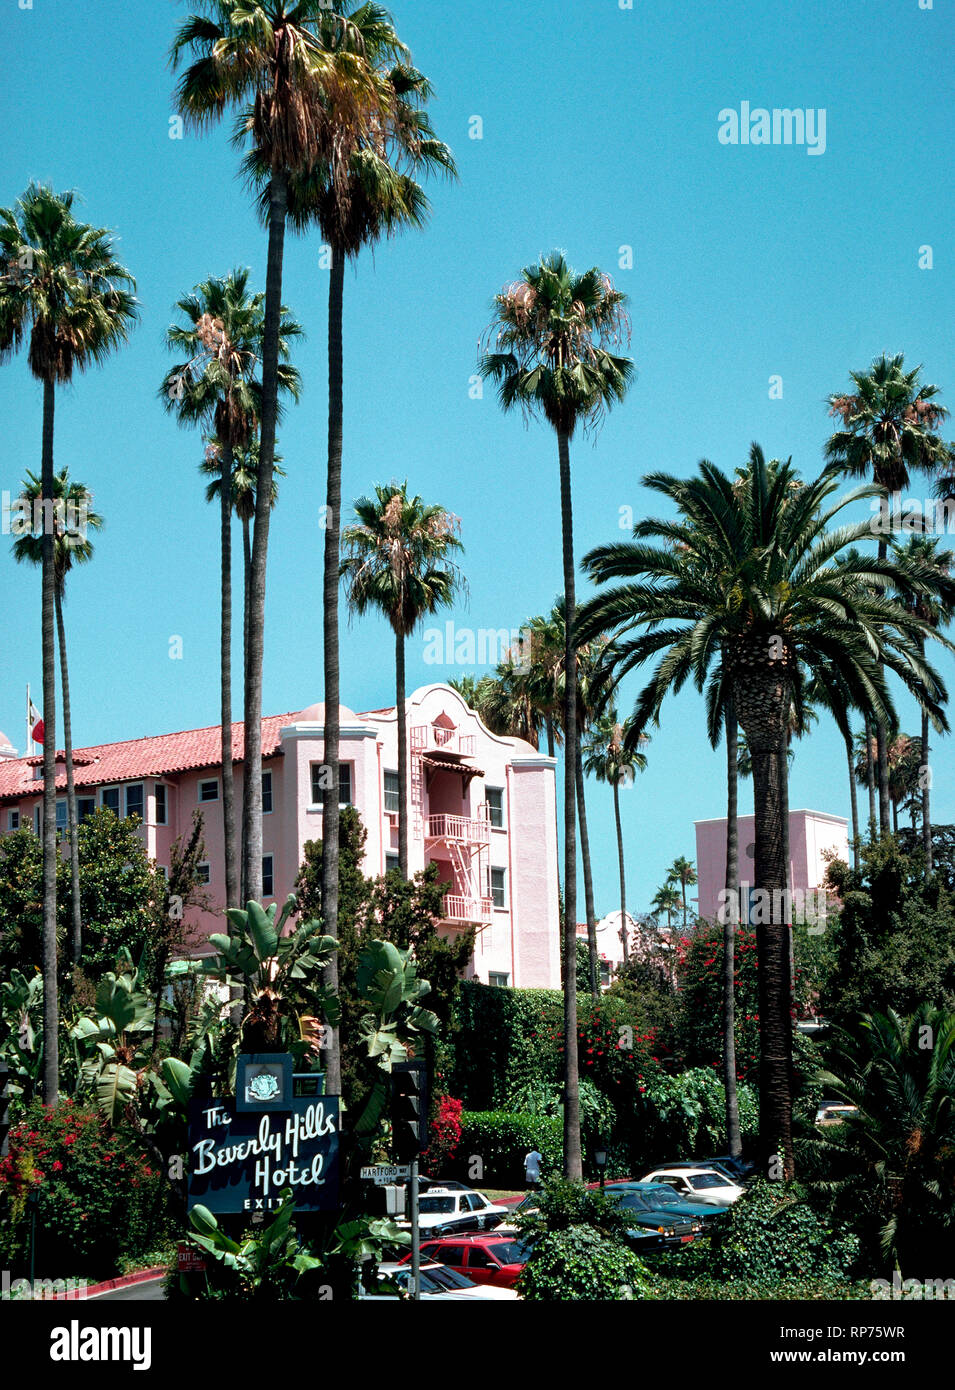 Bastidor de palmeras algunas de la fachada rosa del famoso Hotel de Beverly Hills, que ha sido el hogar de las estrellas de cine y otras celebridades desde que abrió en 1912, dos años antes de su homónimo de la ciudad de Beverly Hills fue incorporada en el condado de Los Angeles, California, Estados Unidos. Hoy en día el lujoso hotel es conocido como el Palacio Rosa y dispone de 210 habitaciones y 23 bungalows apartada rodeada por 12 acres (4.86 hectáreas) de exuberantes jardines tropicales y flores exóticas. Las estrellas de Hollywood se ven a menudo en su principal restaurante spot, el Polo Lounge. Foto de stock